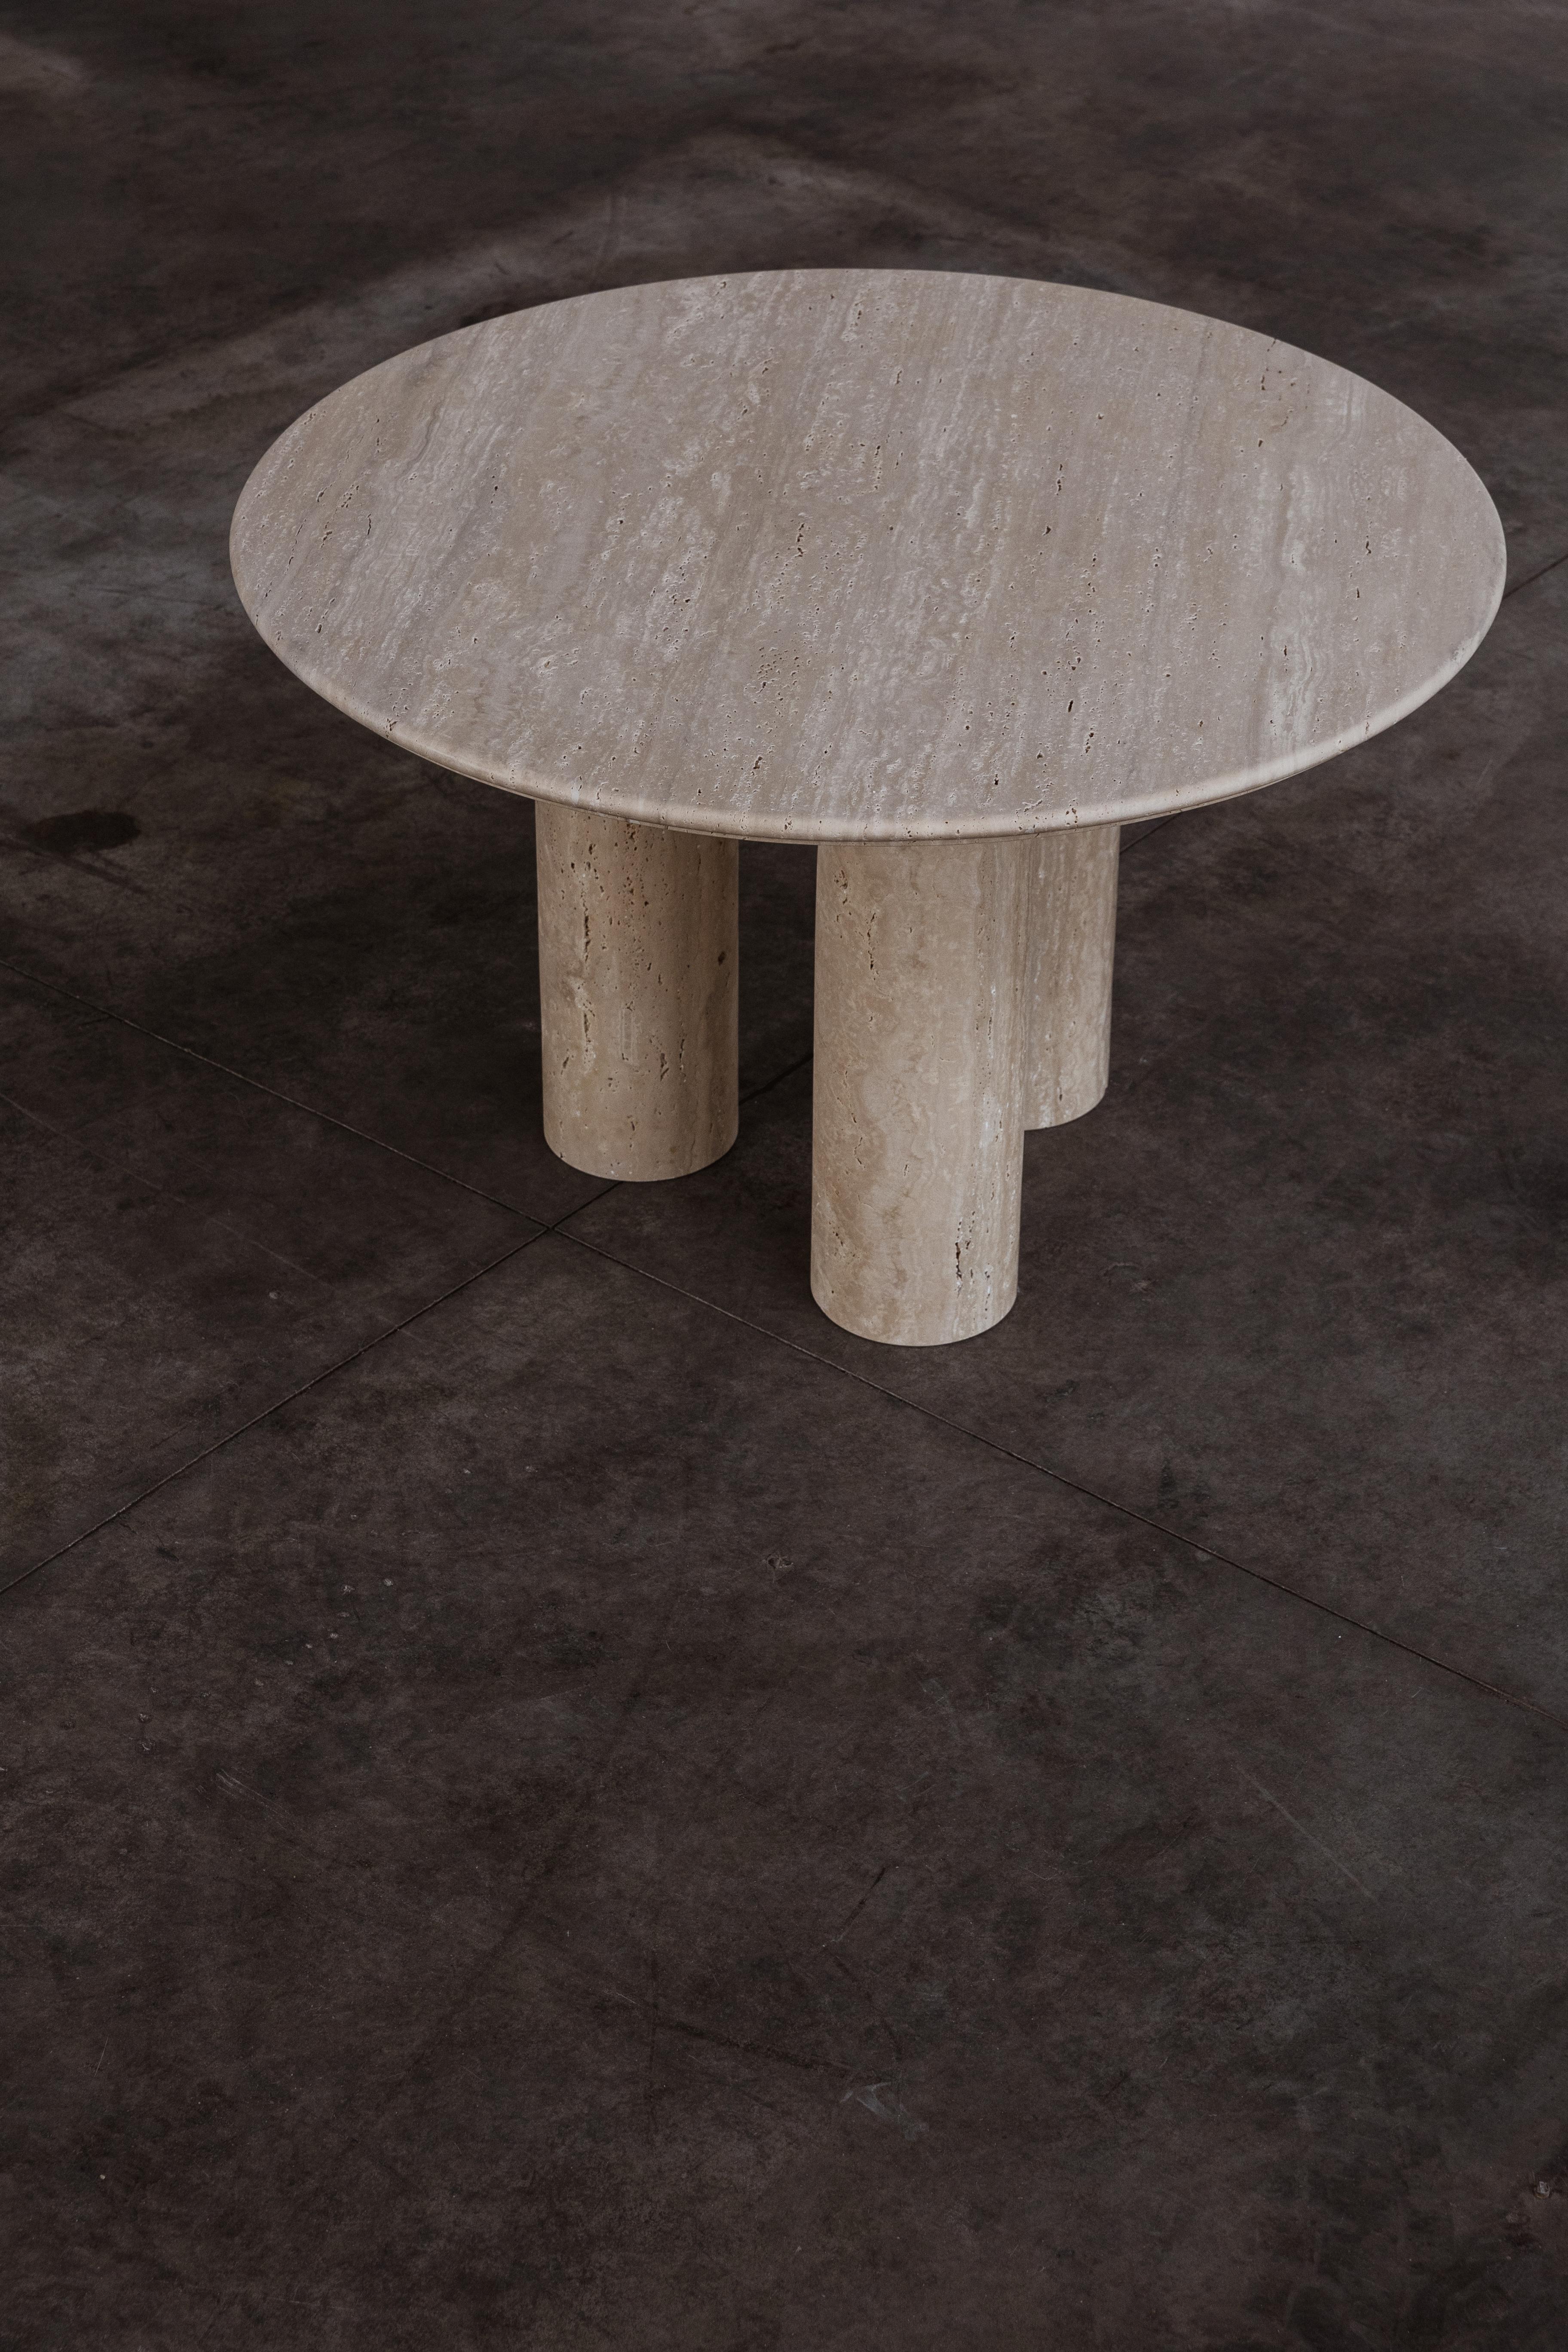 Mario Bellini “Colonnato” dining table for Cassina, travertine, Italy, 1977.

Bellini designed the 